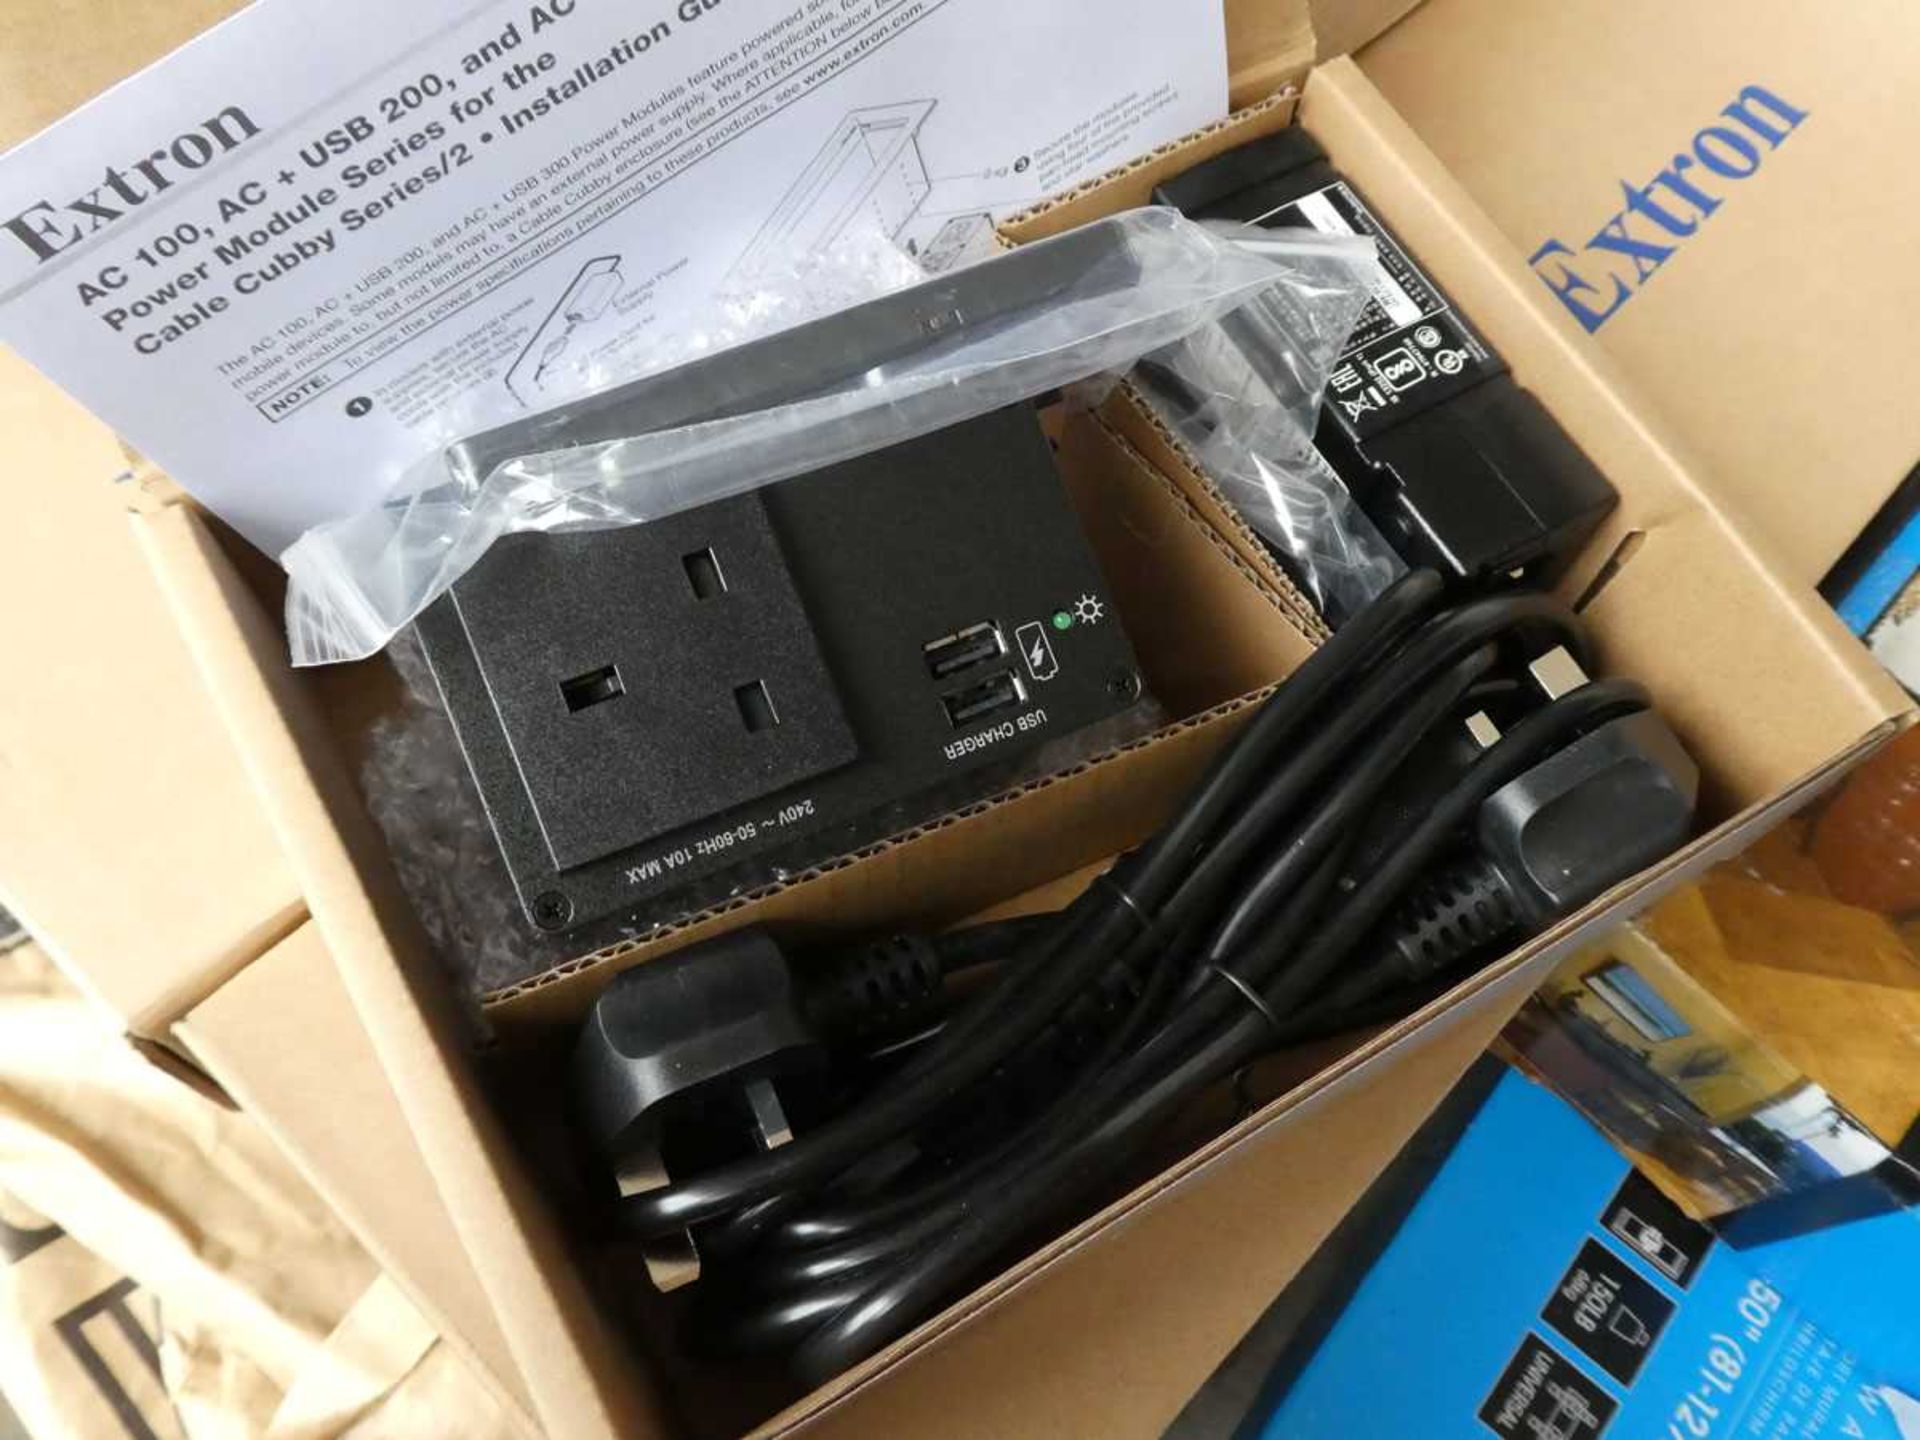 +VAT 11 Extron AC+USB 212 UK cable cubby power modules